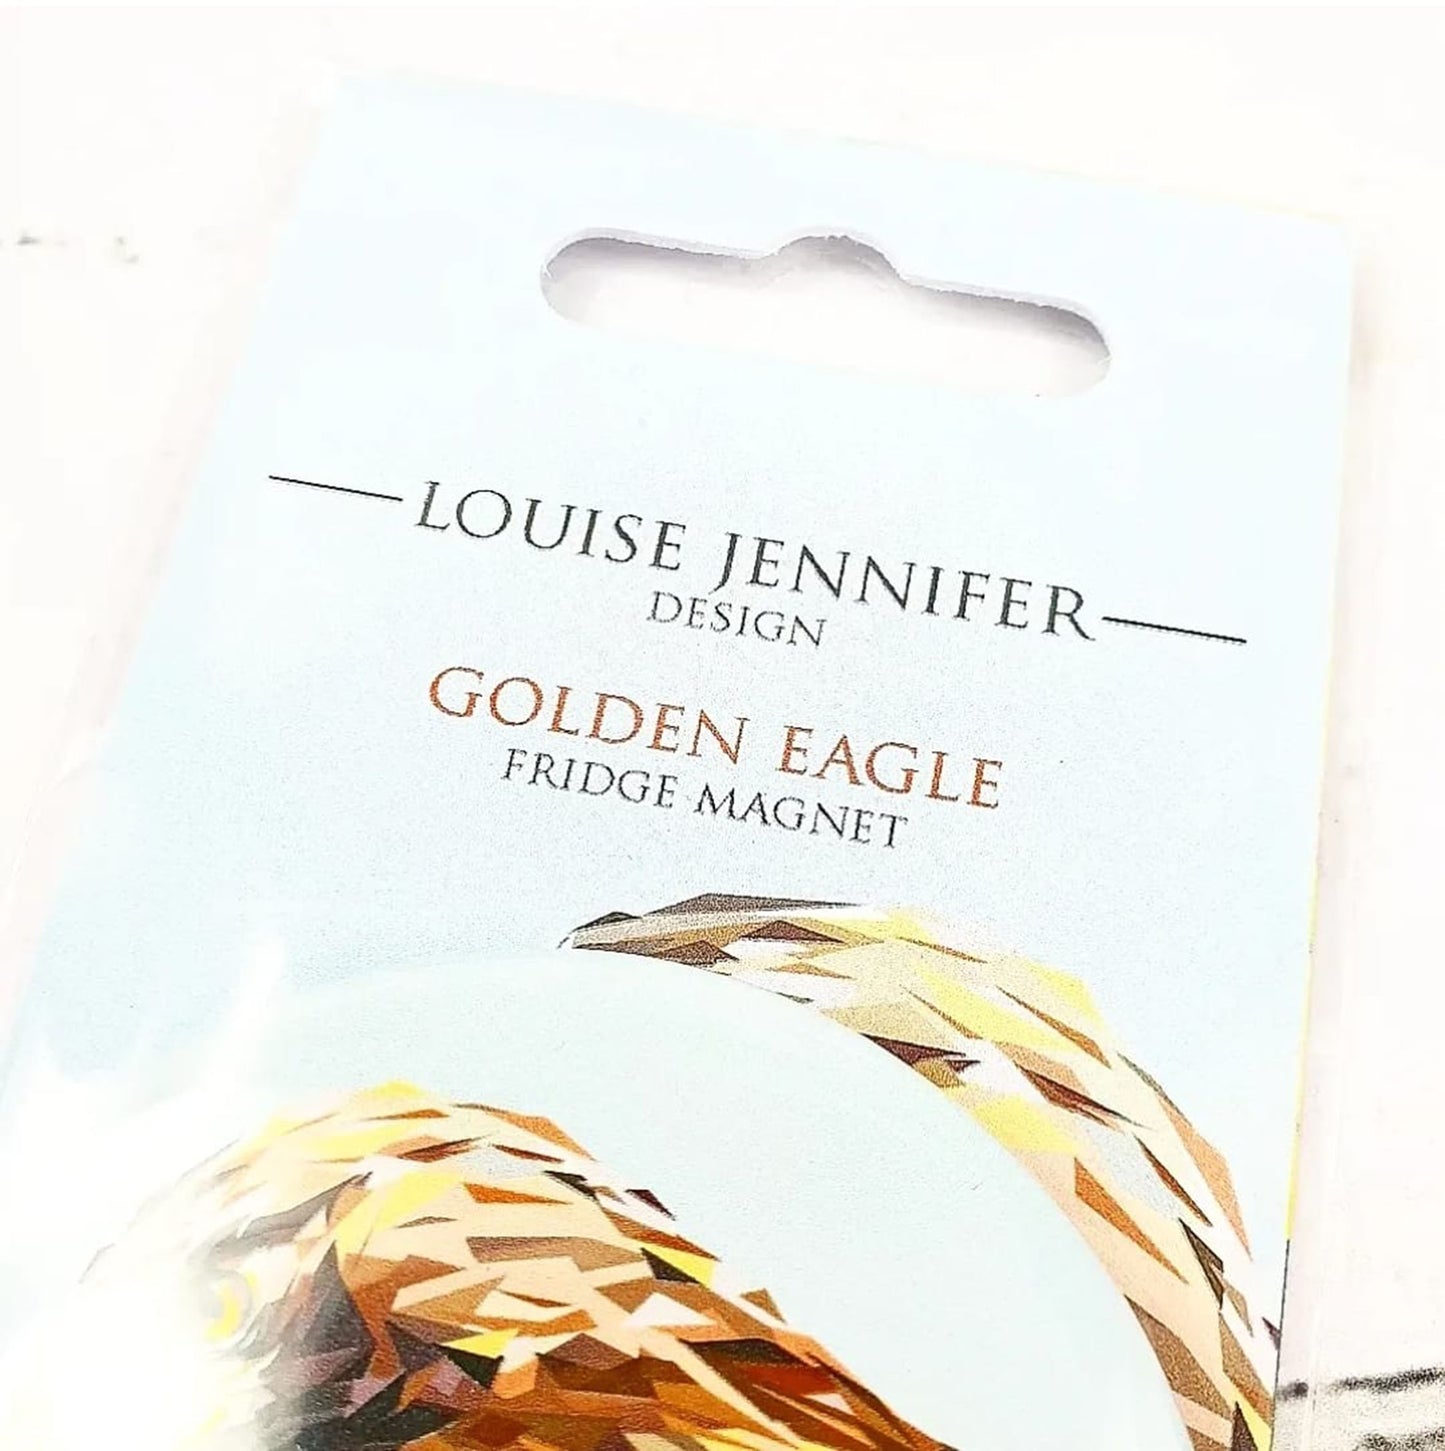 GOLDEN EAGLE magnet